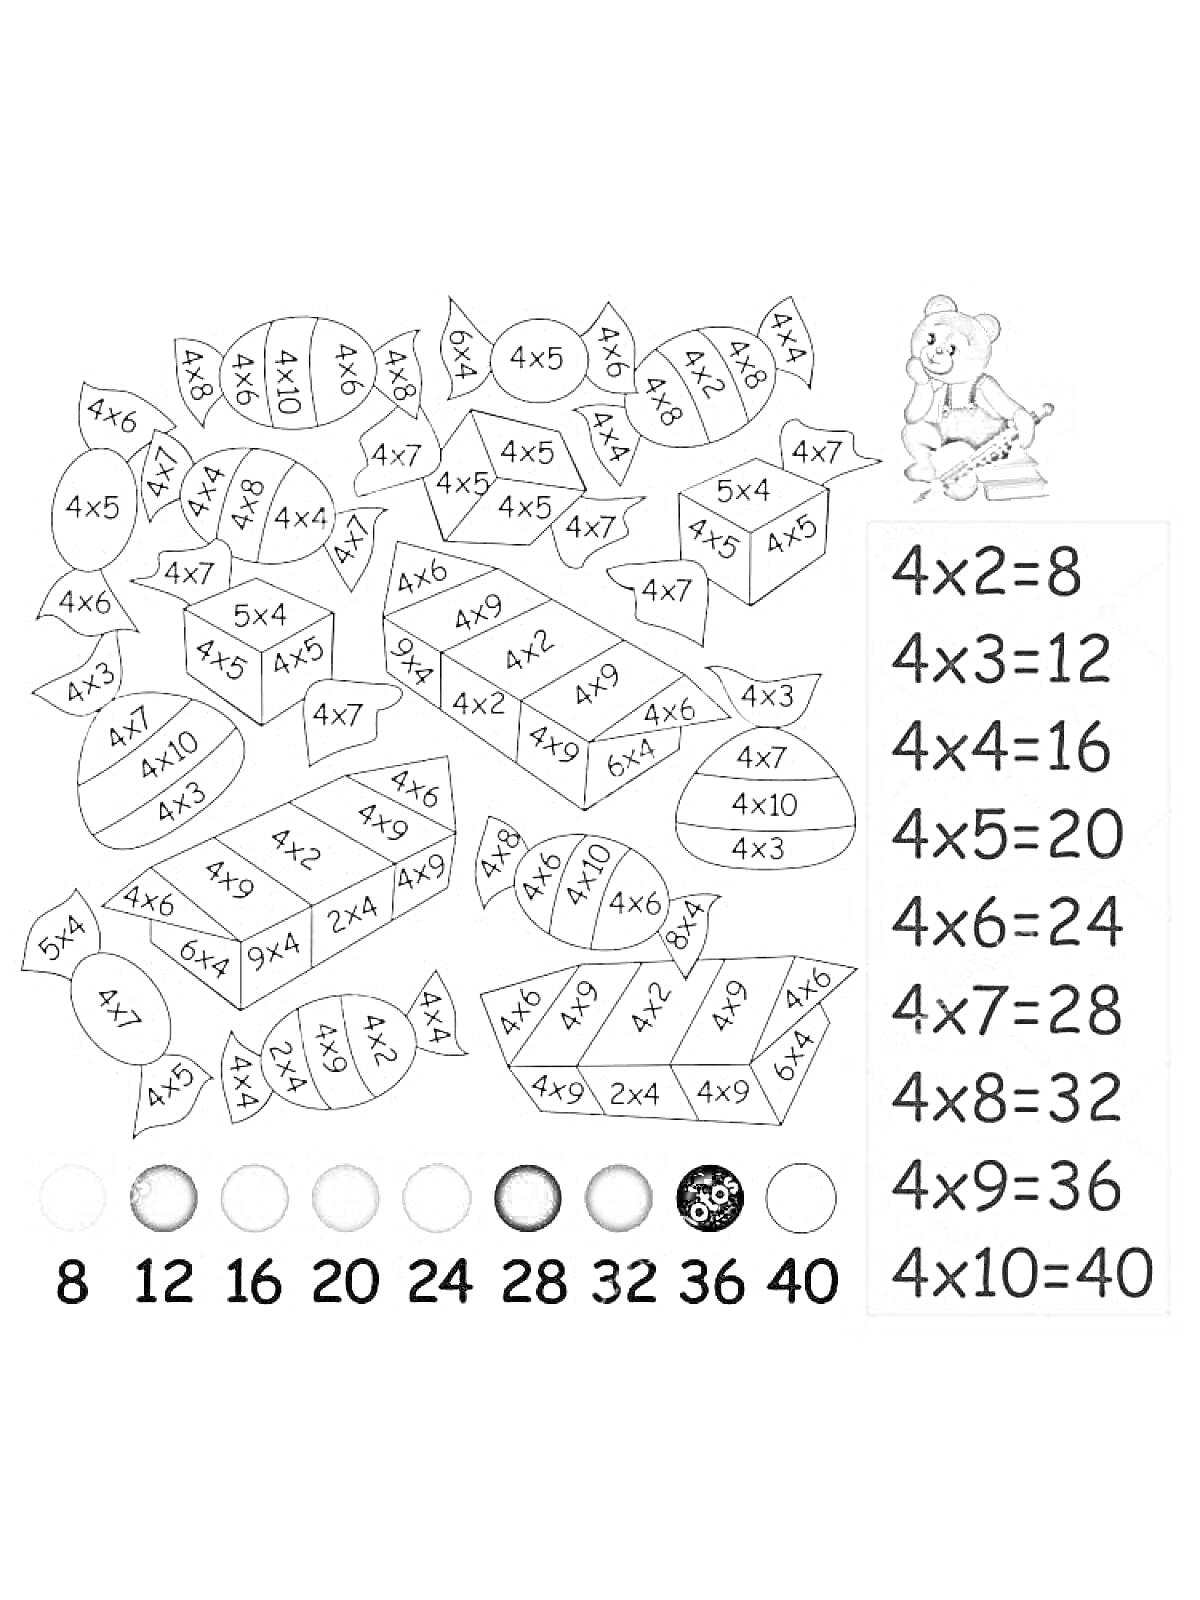 Раскраска с таблицей умножения на 4, рисунок конфет, медвежонок, цветовая схема